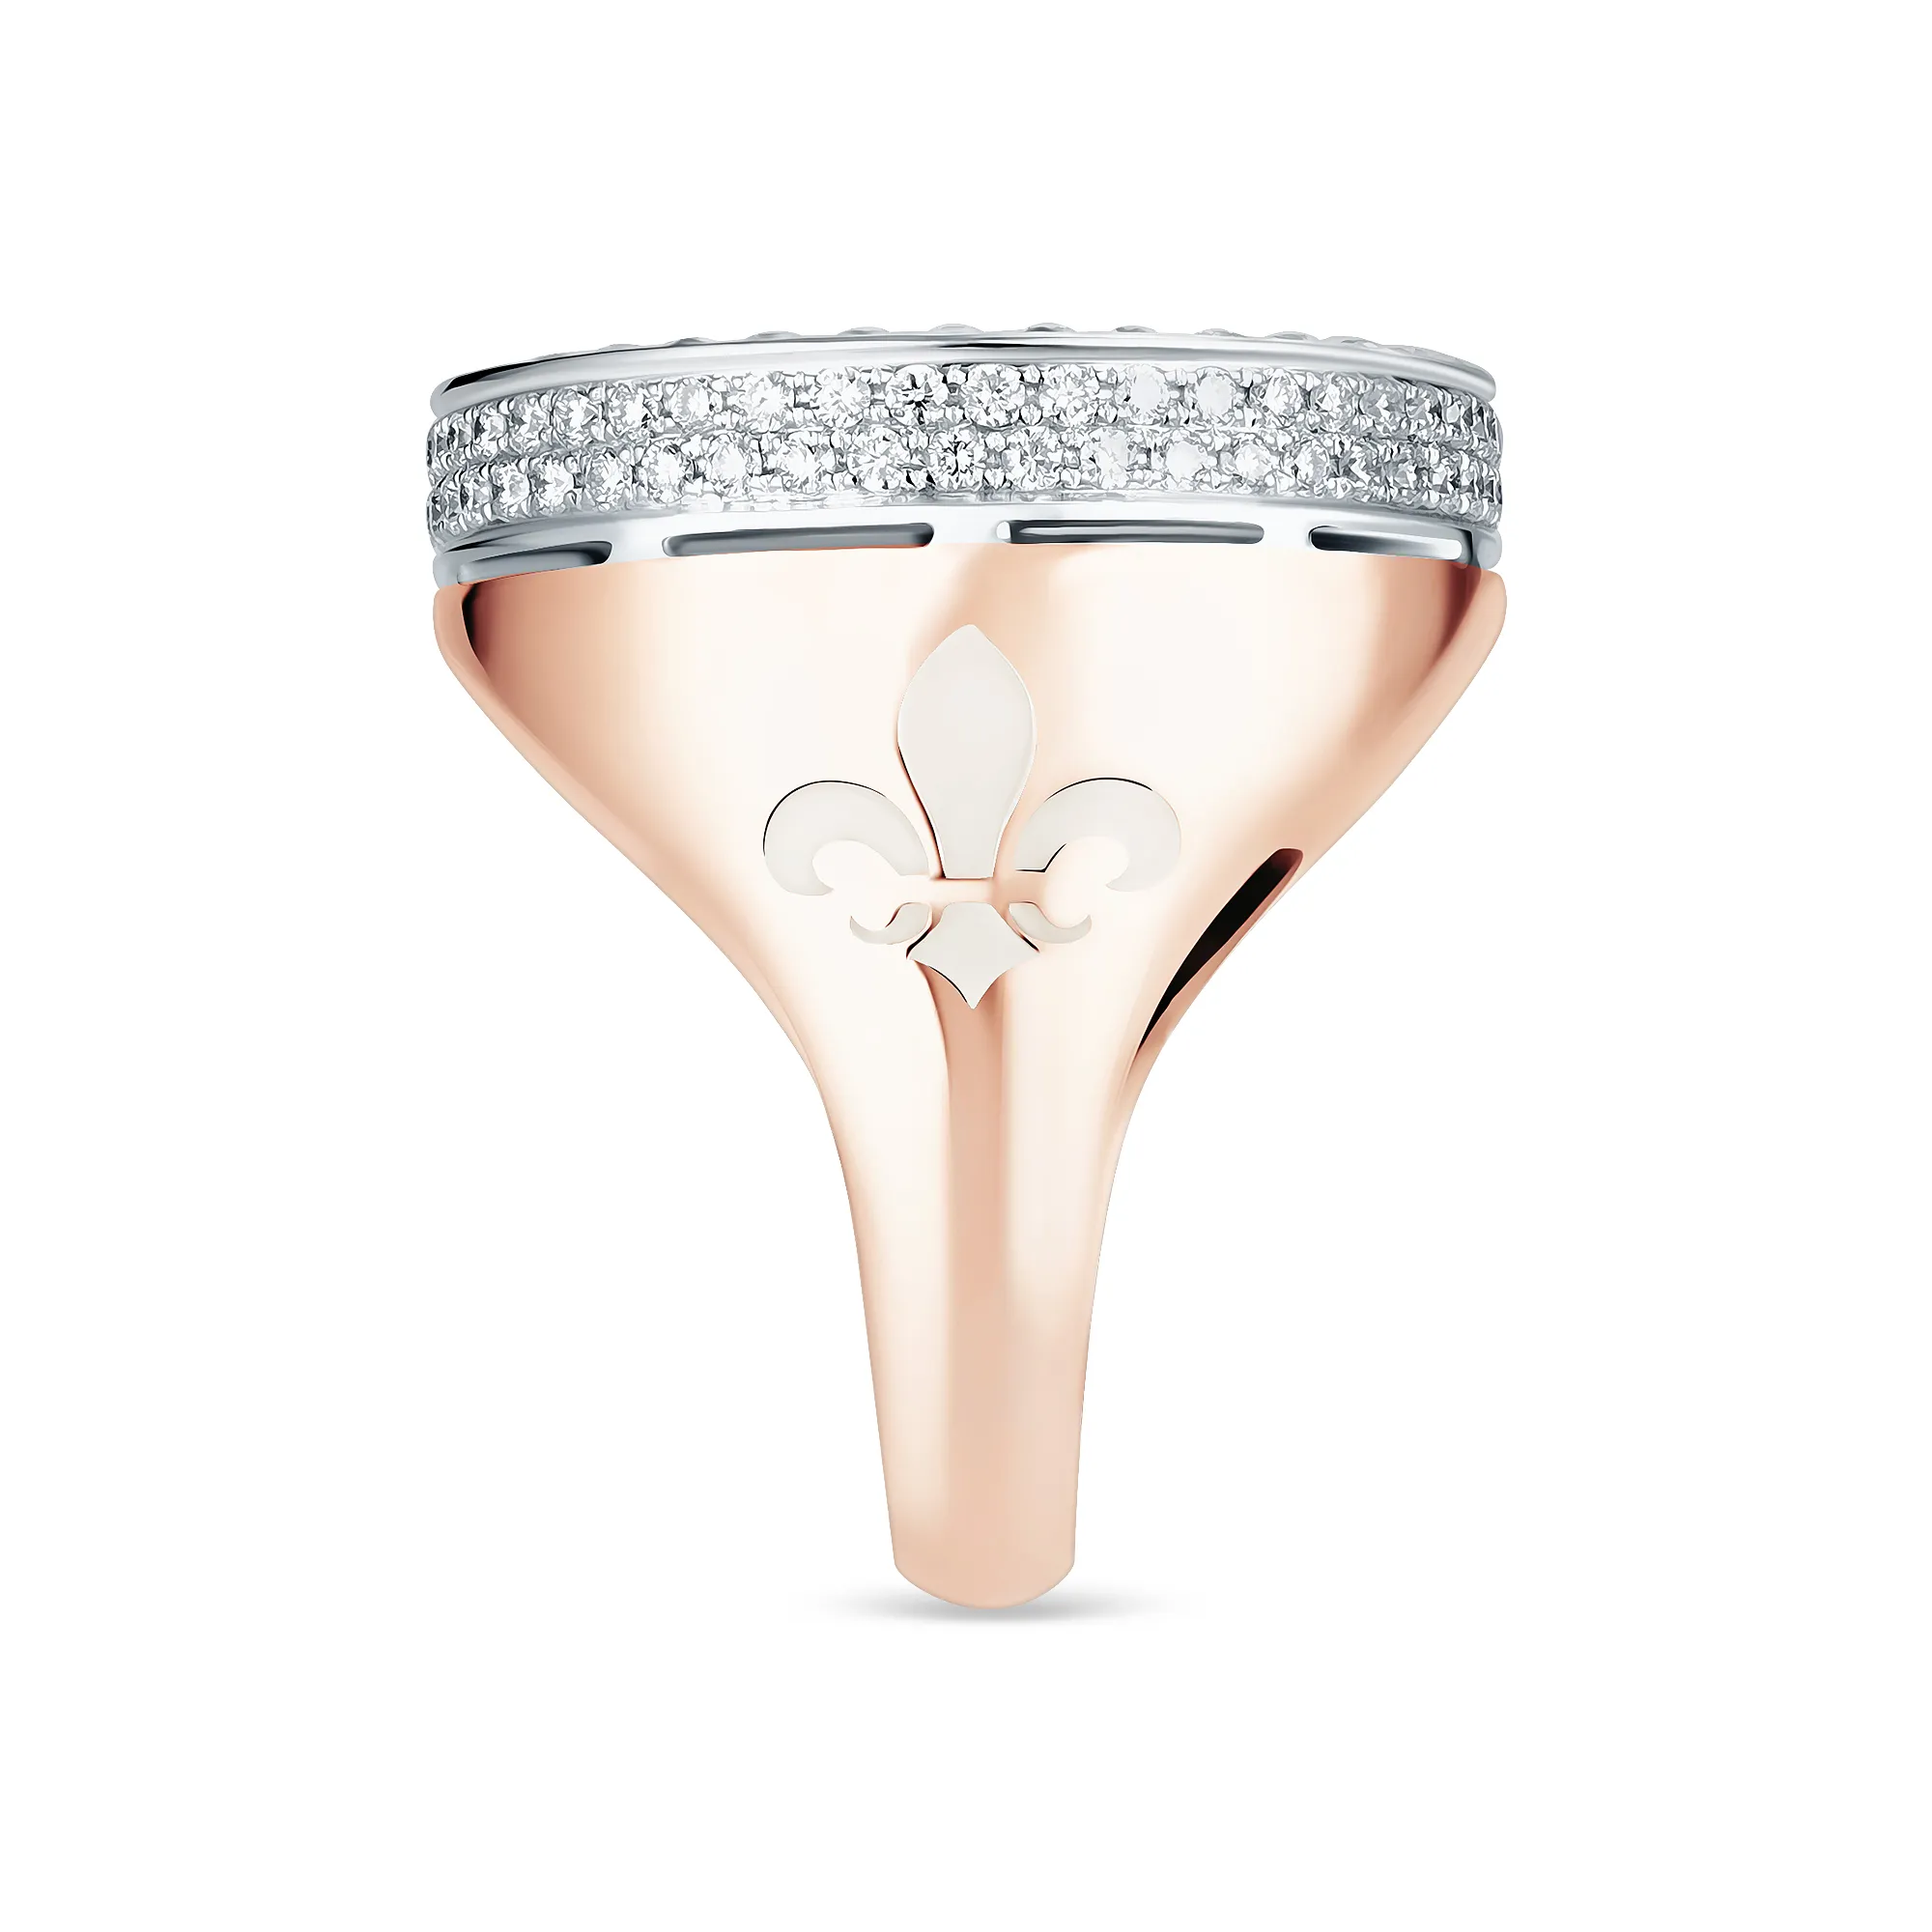 Женское кольцо из золота с бриллиантом и эмалью